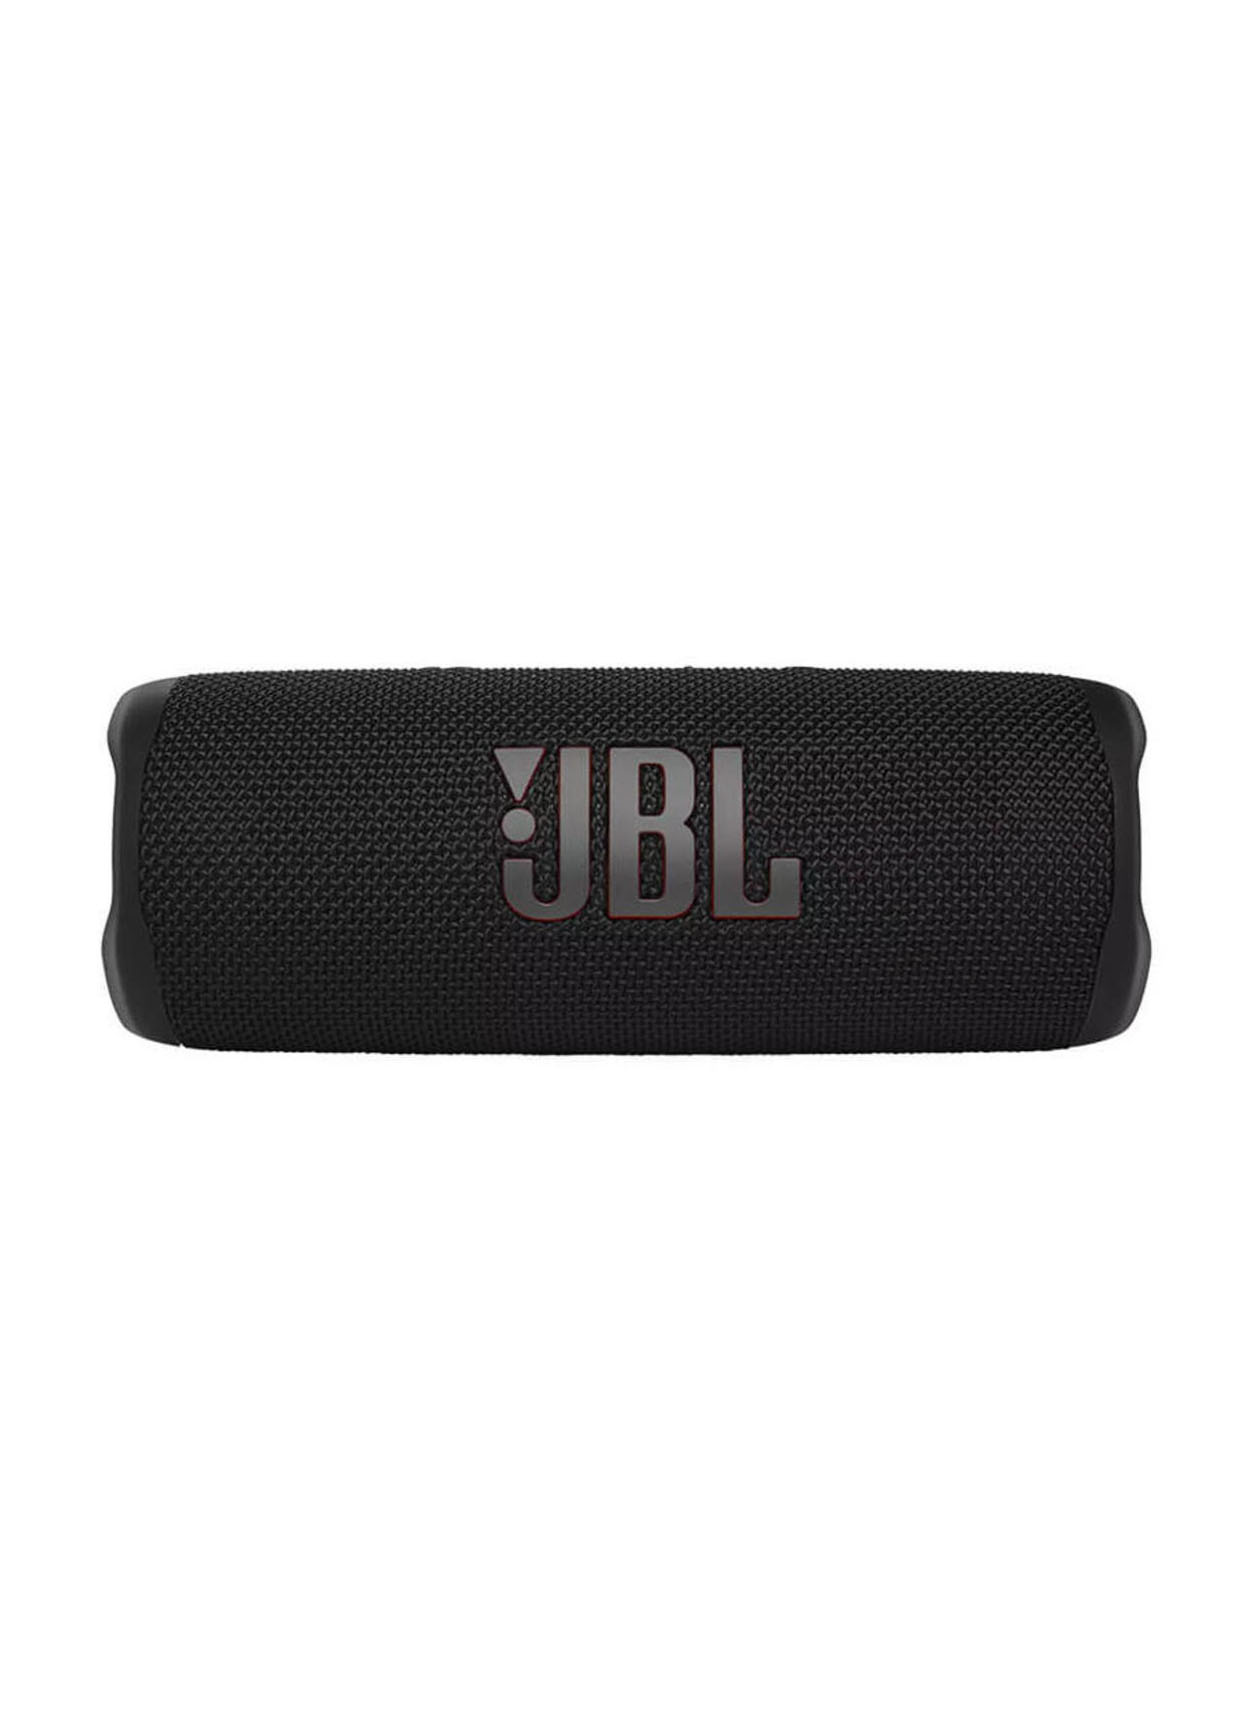 JBL Black Flip 6 Portable Waterproof Speaker